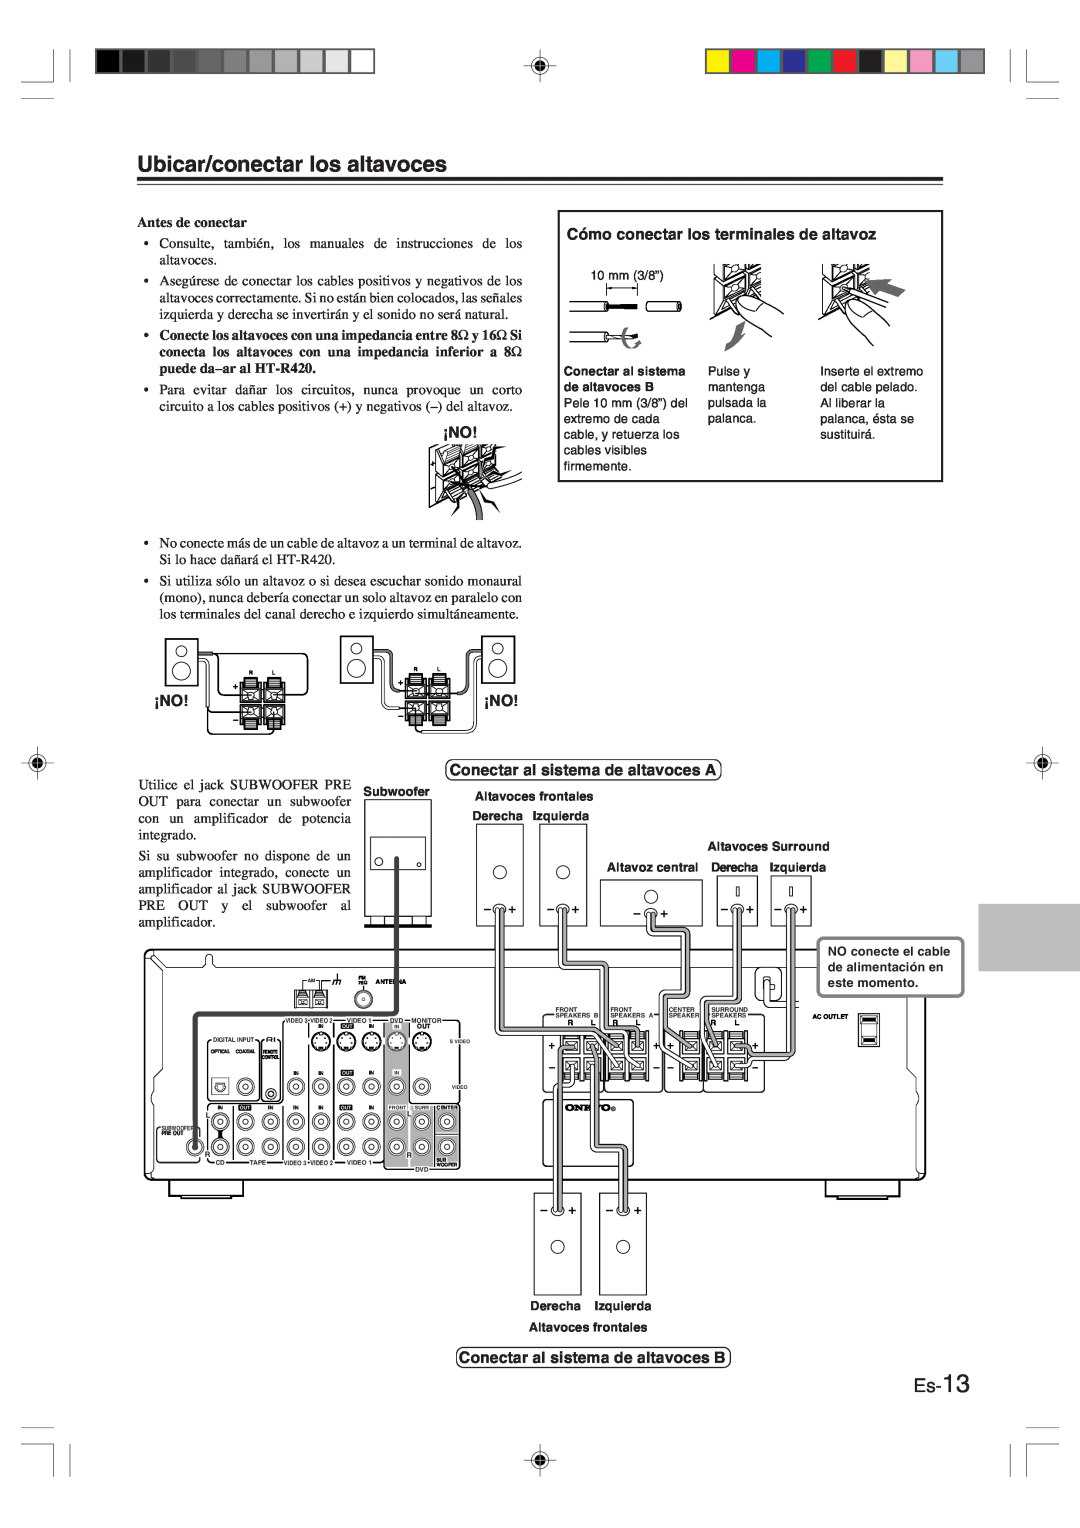 Onkyo HT-R420 manual Ubicar/conectar los altavoces, Es-13, Antes de conectar 